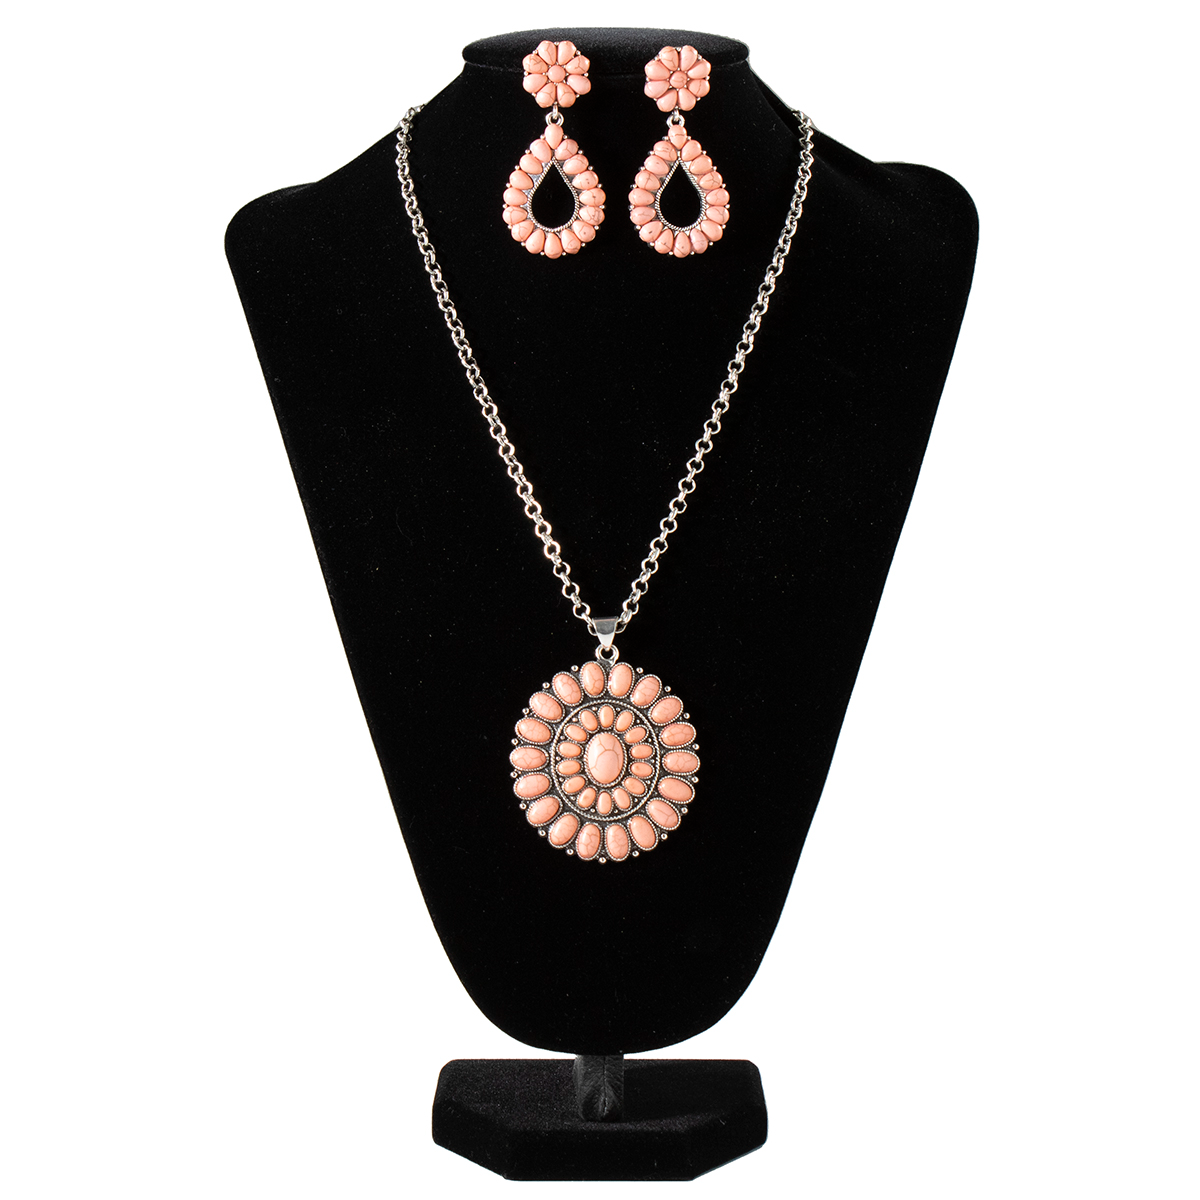 Silver Strike Women's Necklace & Earrings Set - Pink Stones